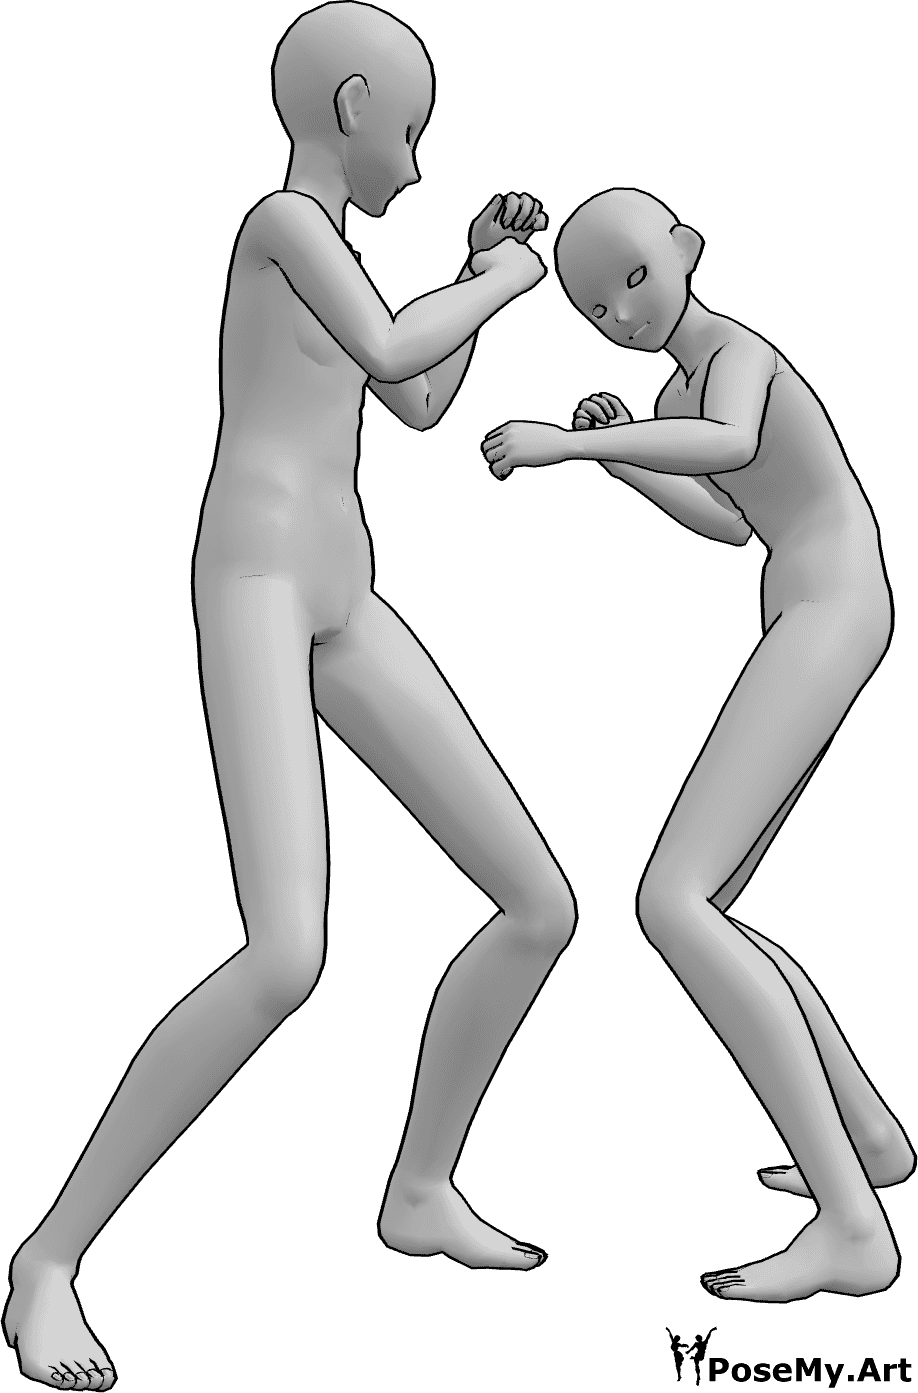 Référence des poses- Anime box fighting pose - Les hommes d'Anime se battent, ils sont en position de boxe et s'apprêtent à donner un coup de poing.